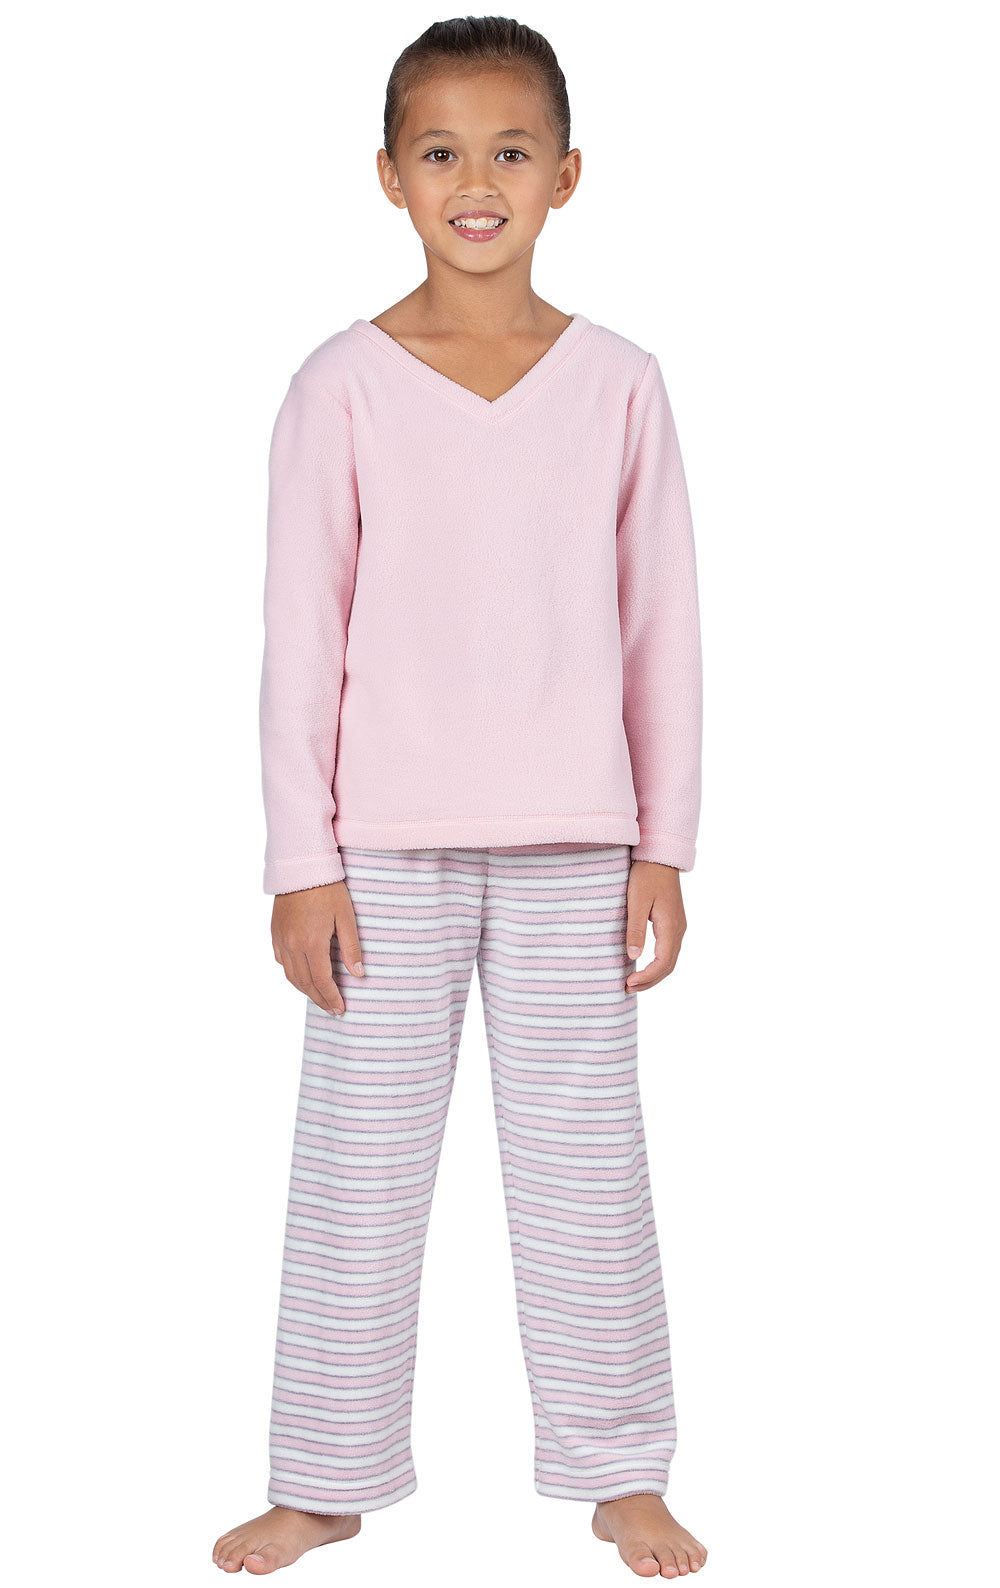 Snuggle Fleece Kids Pajamas